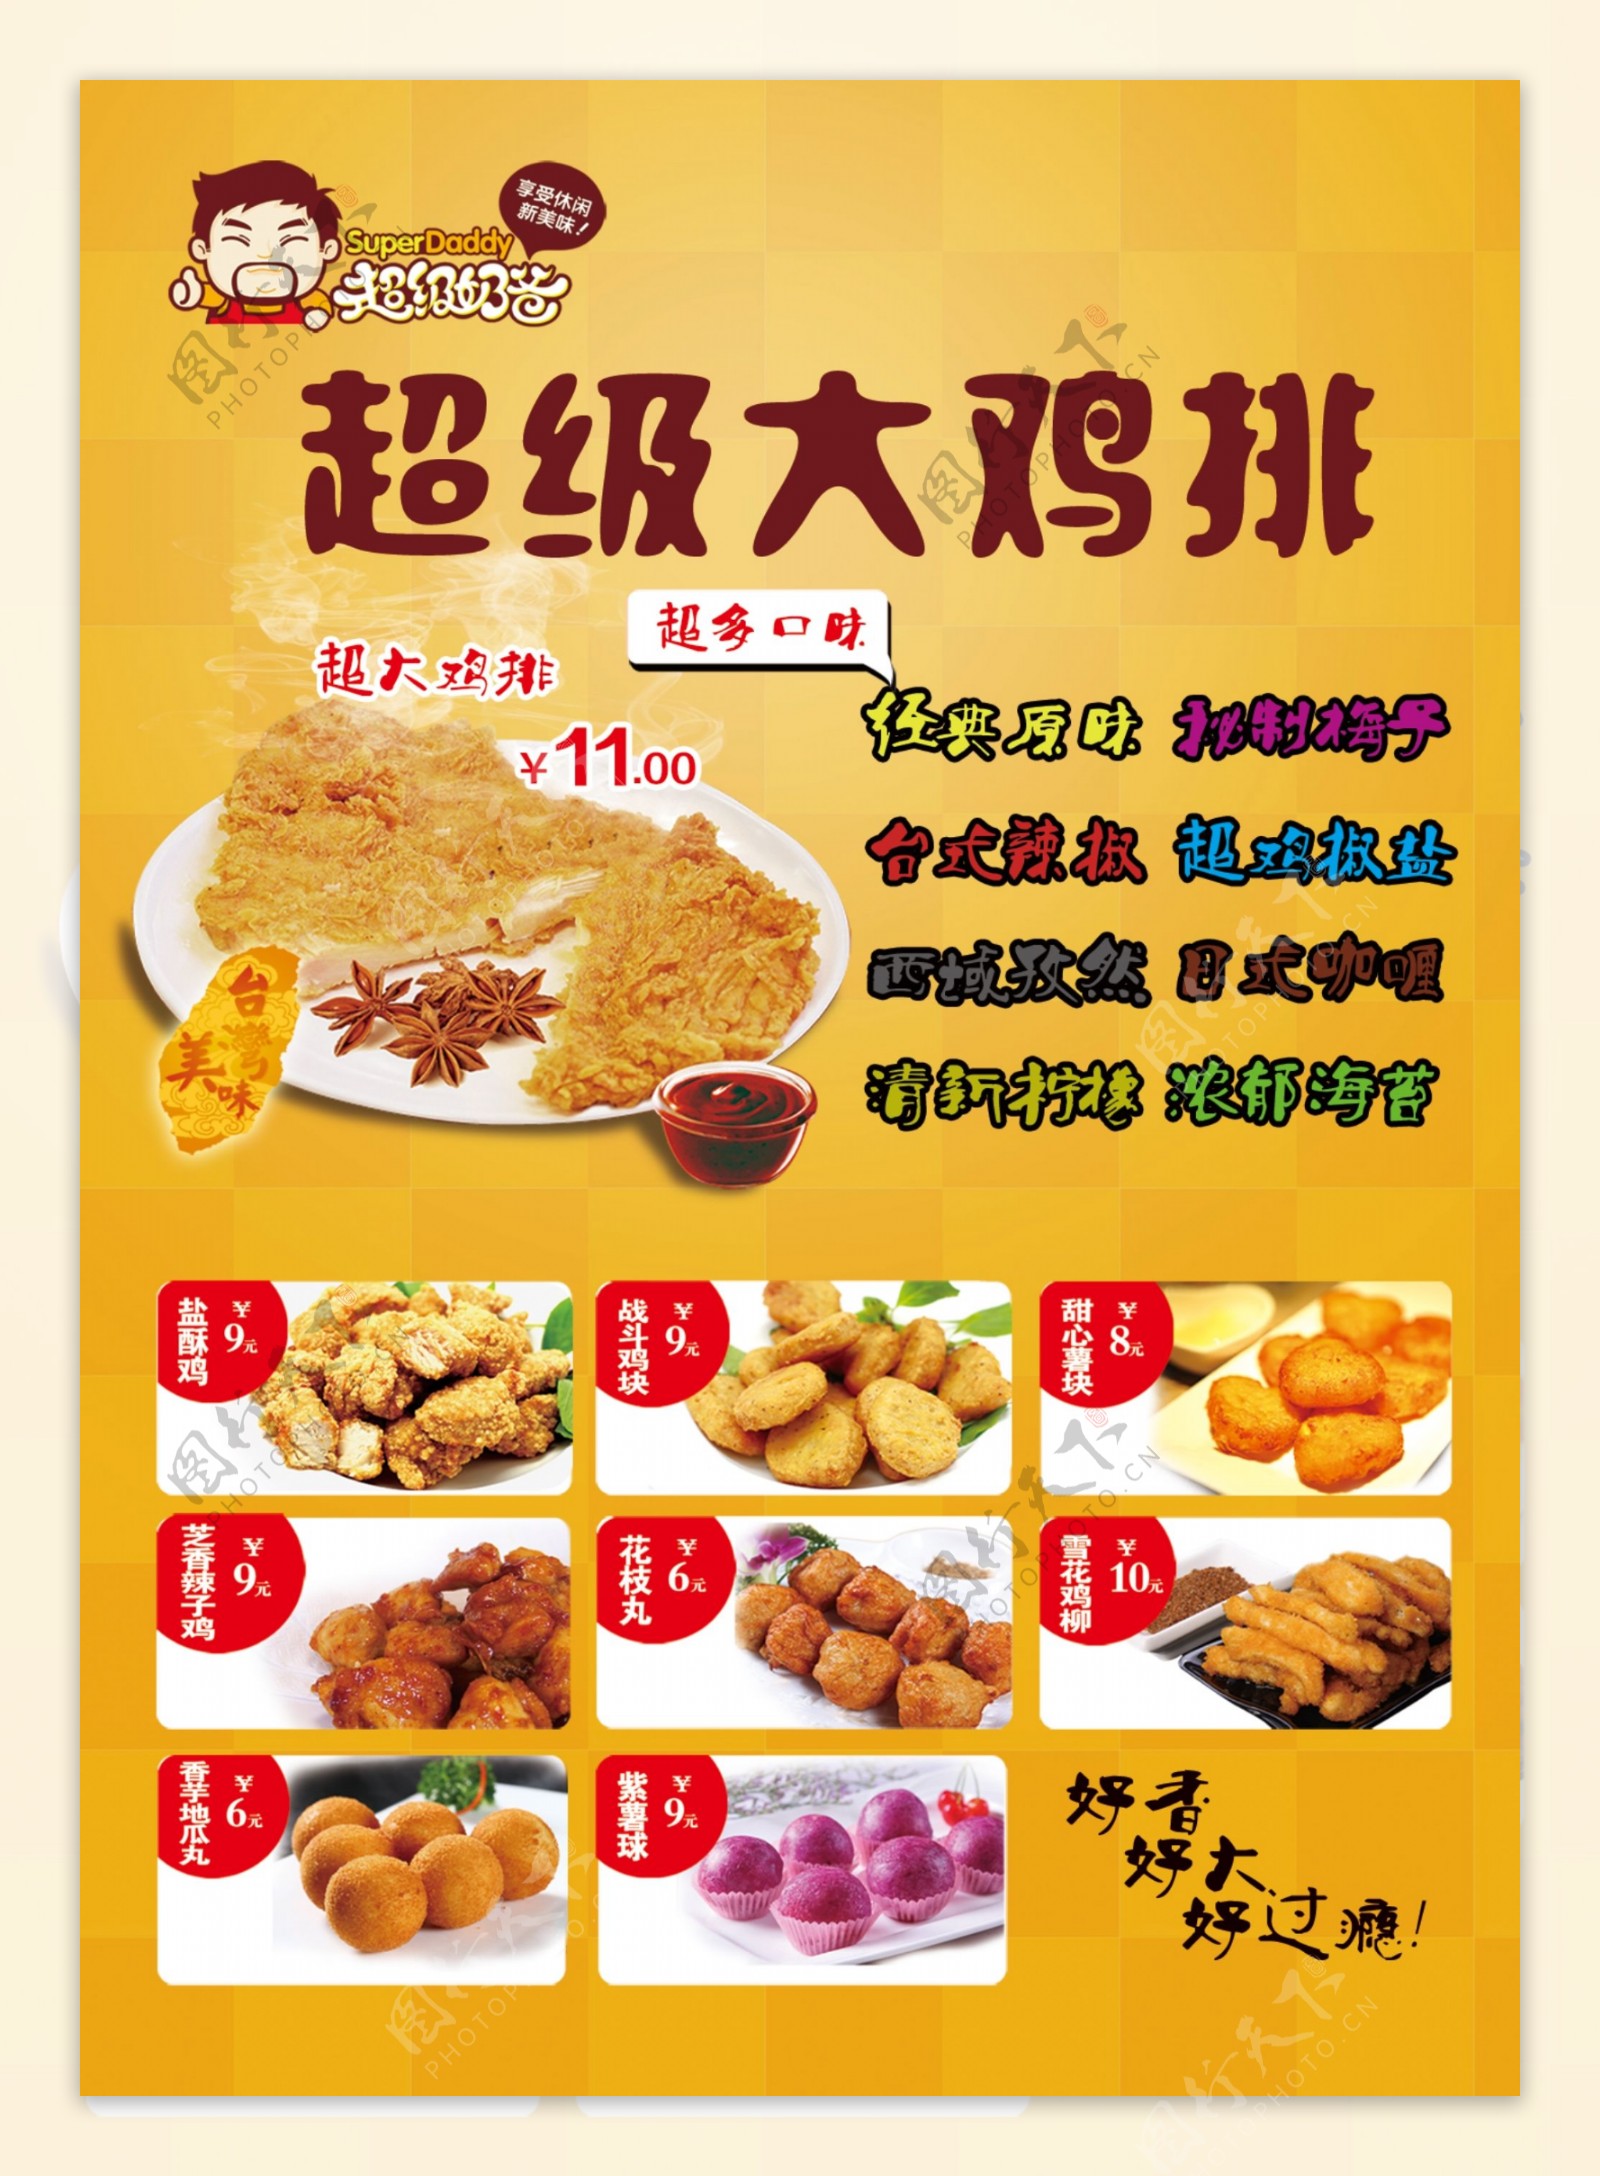 浅色系列鸡排西式快餐炸鸡菜单价目表图片下载 - 觅知网